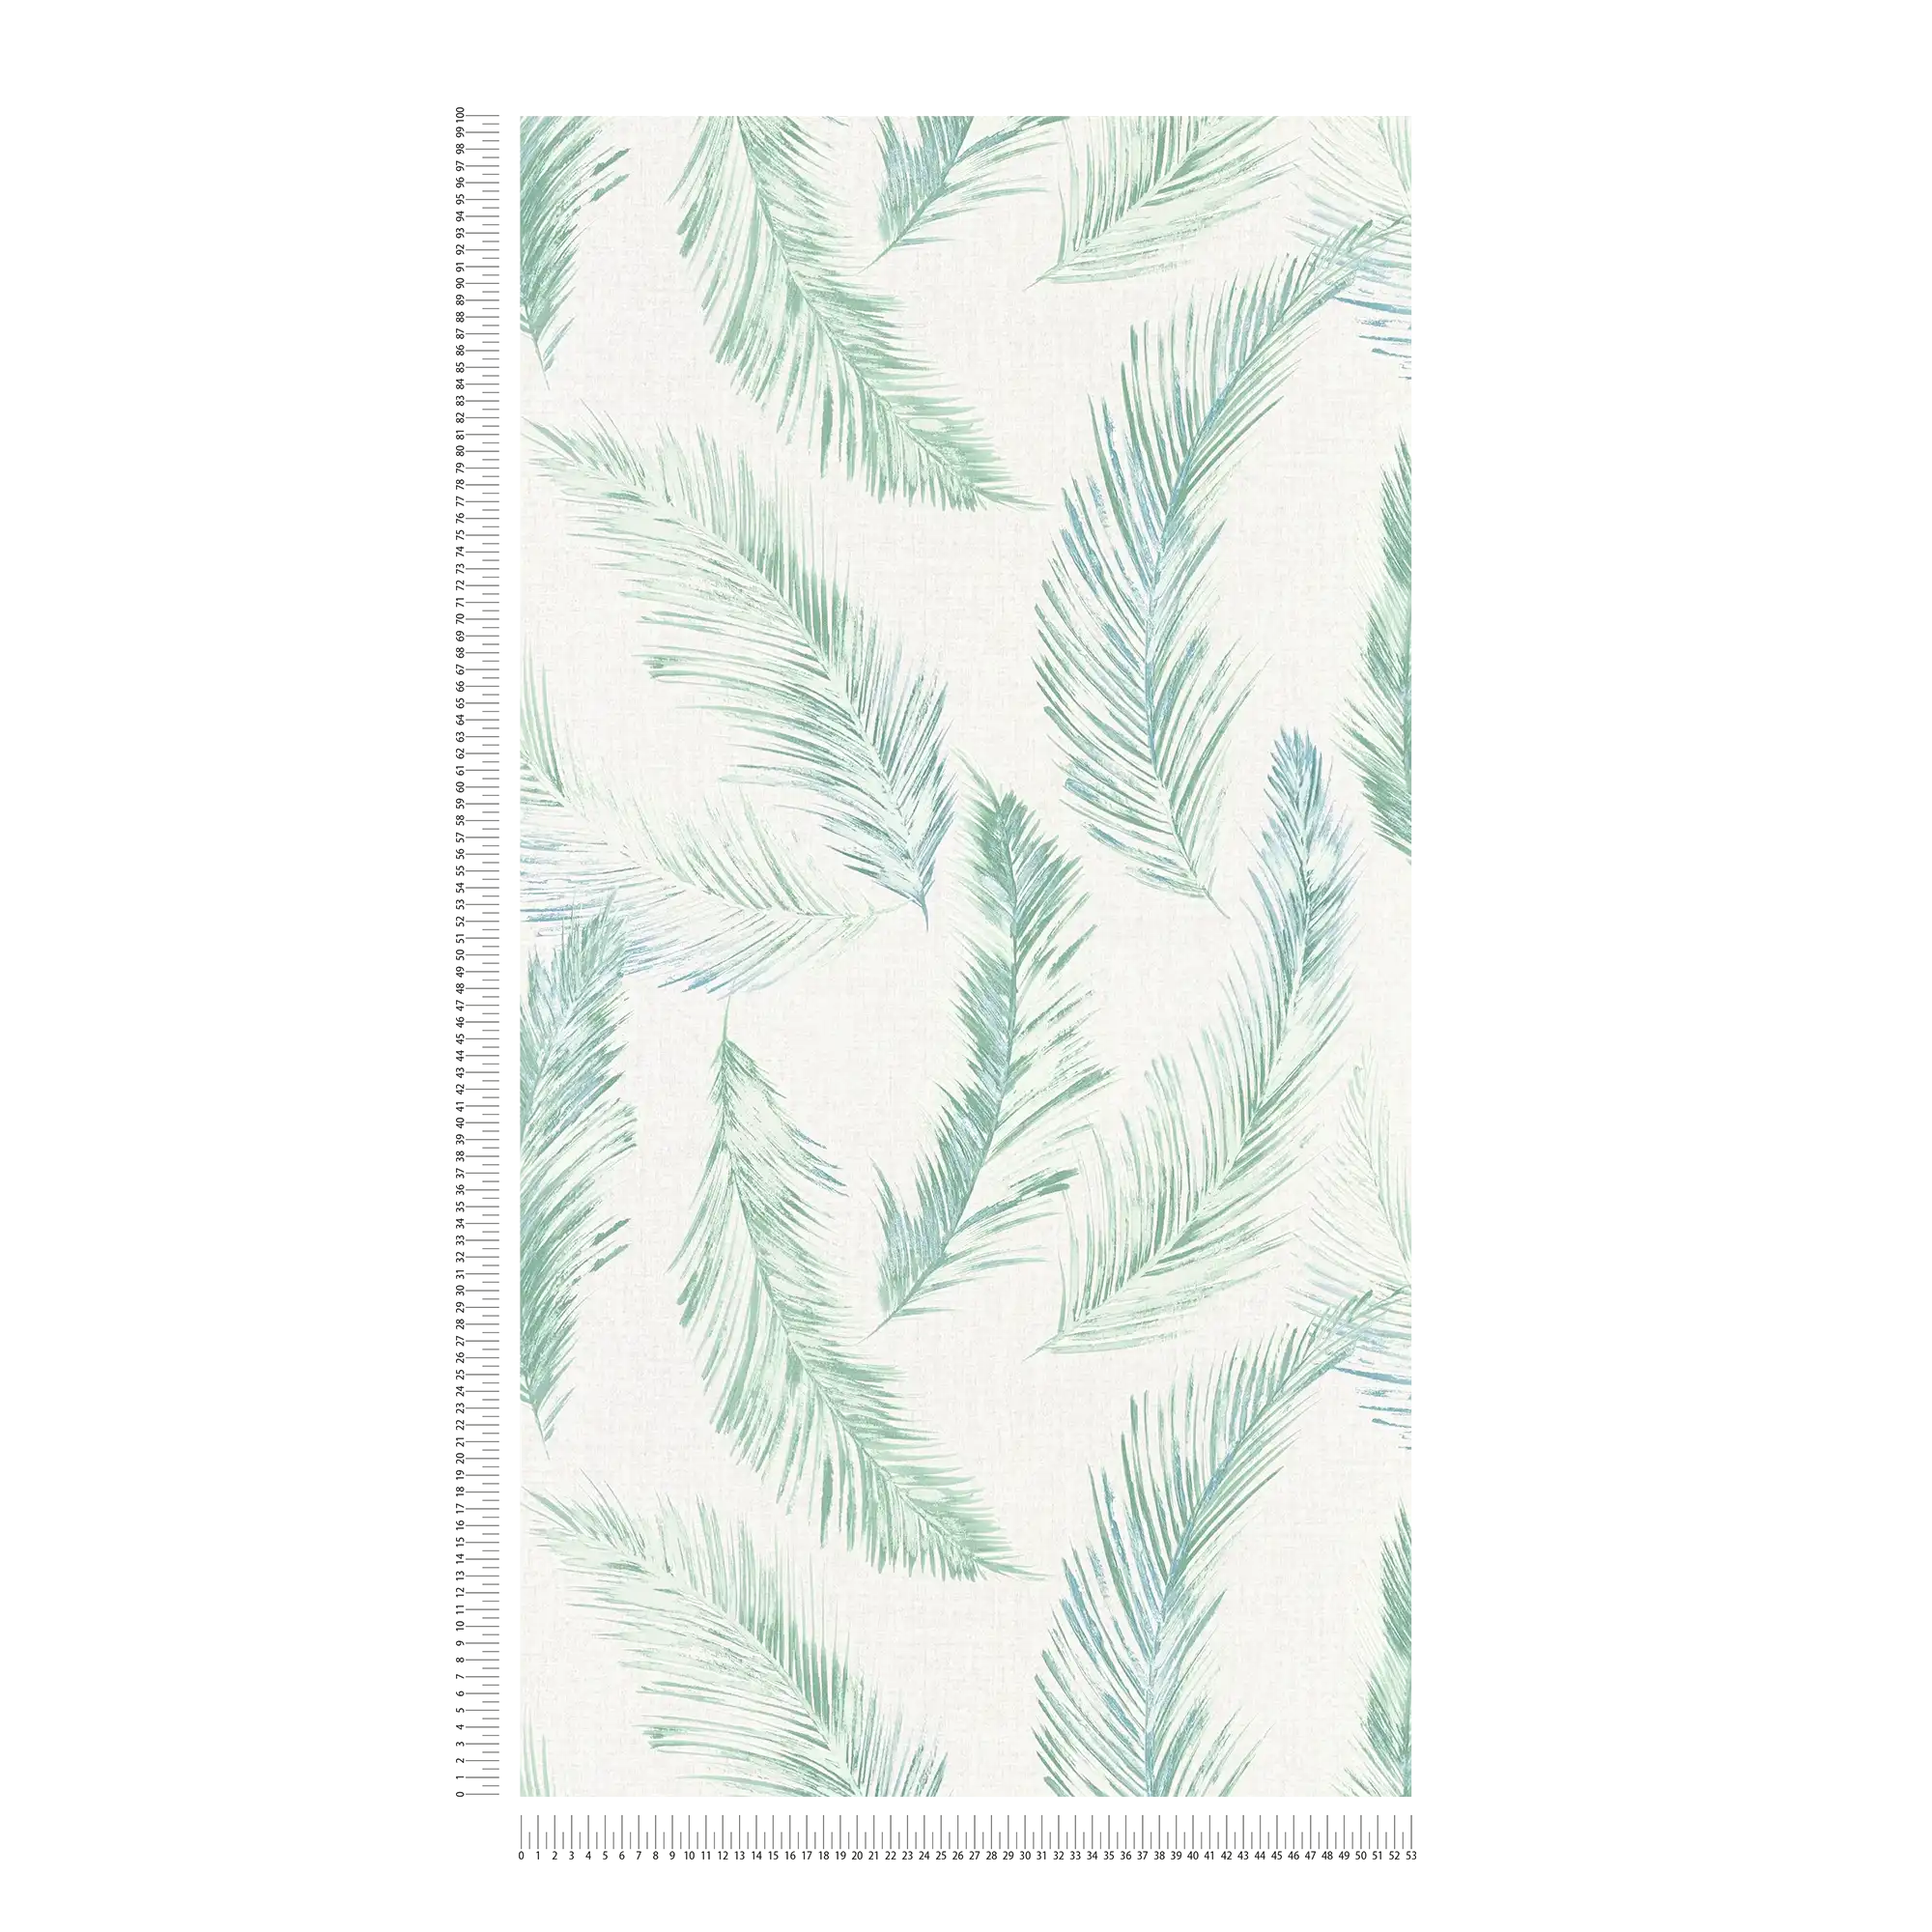             Carta da parati in tessuto non tessuto con disegno di piume in stile acquerello - blu, verde
        